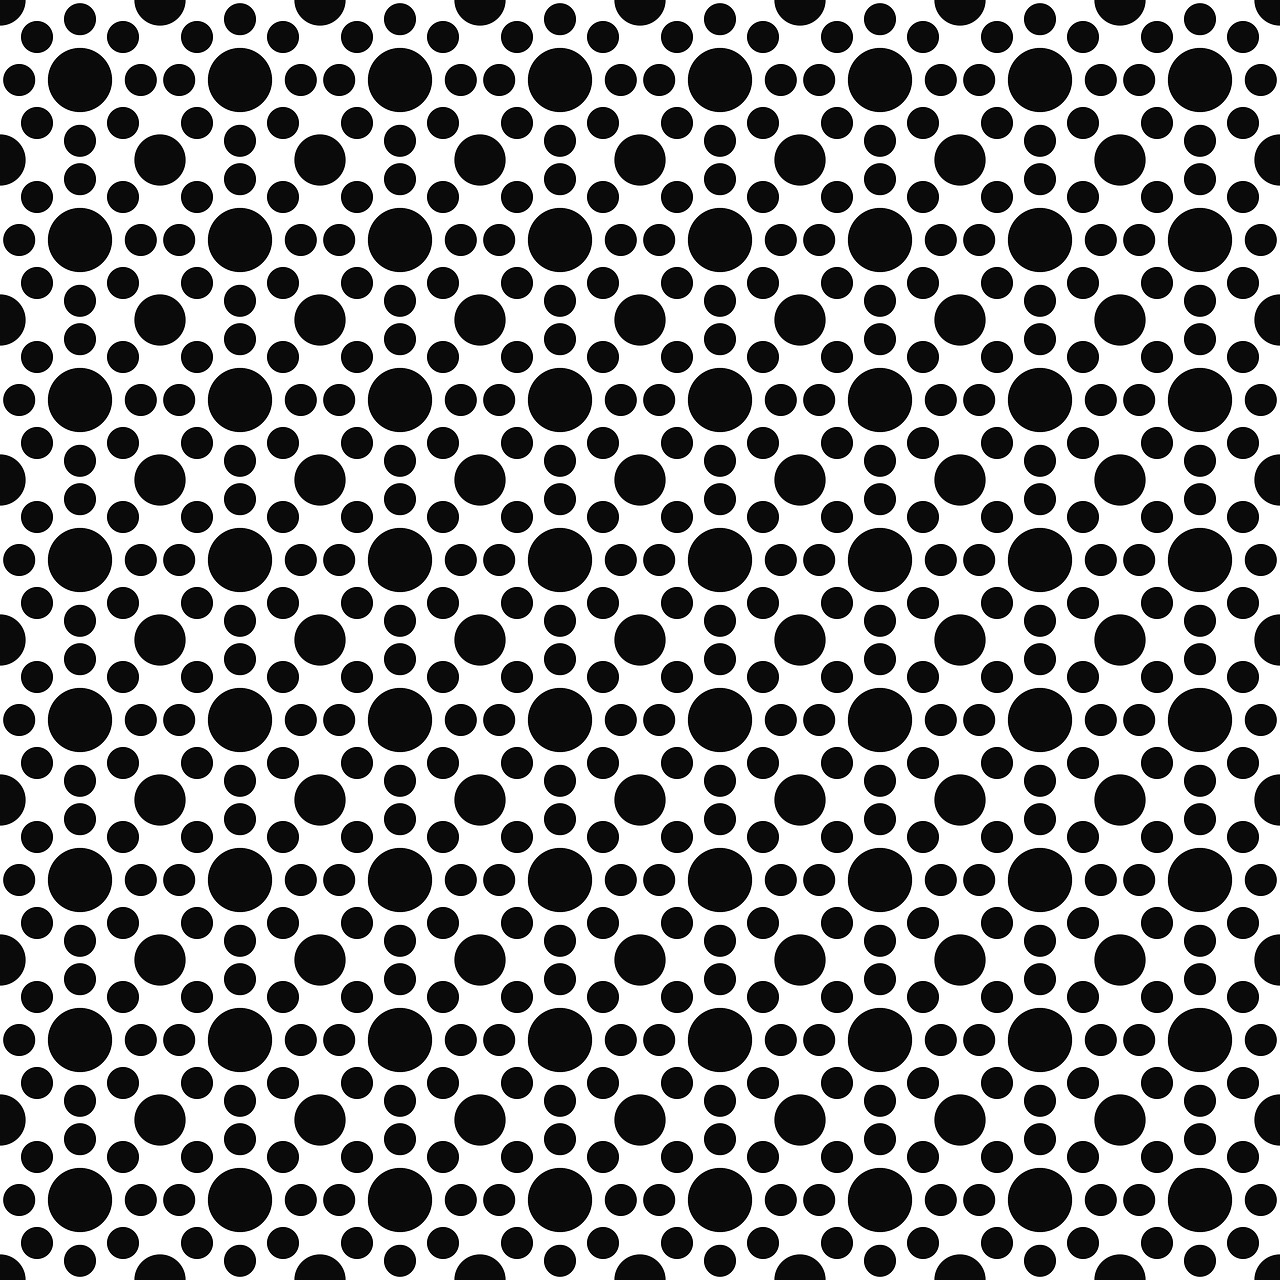 dot circle pattern free photo